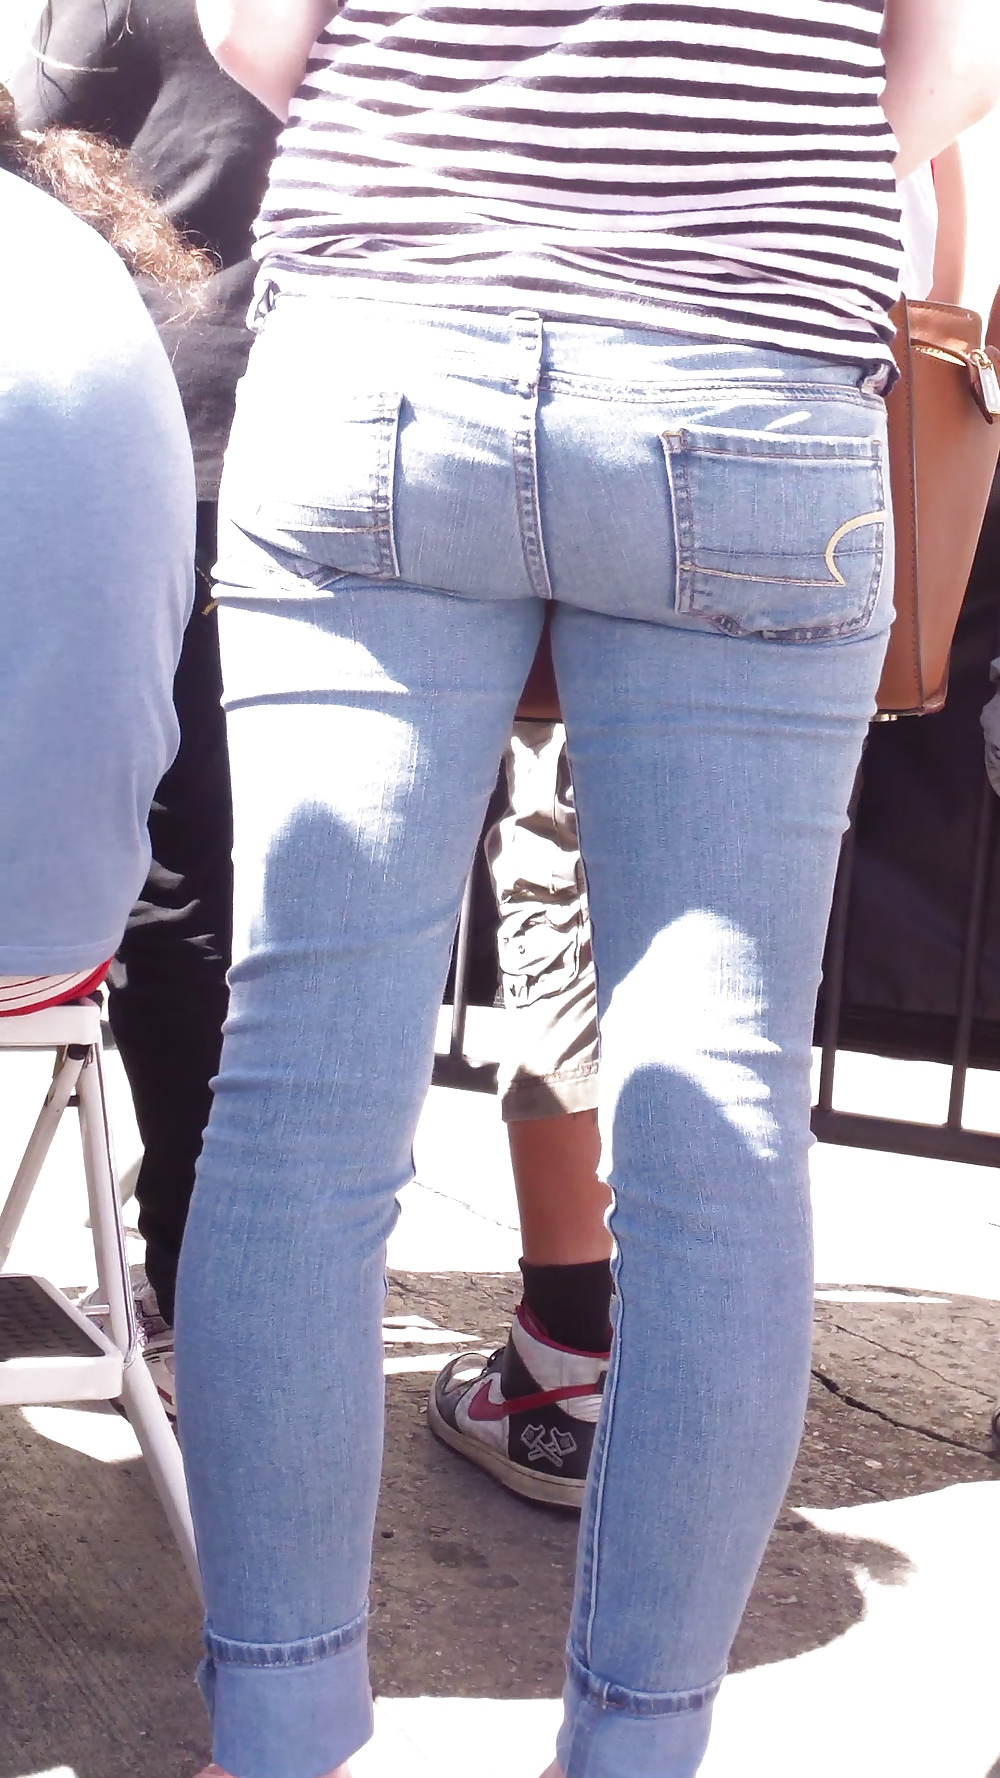 Teen ass & close up butt in jeans #19969065